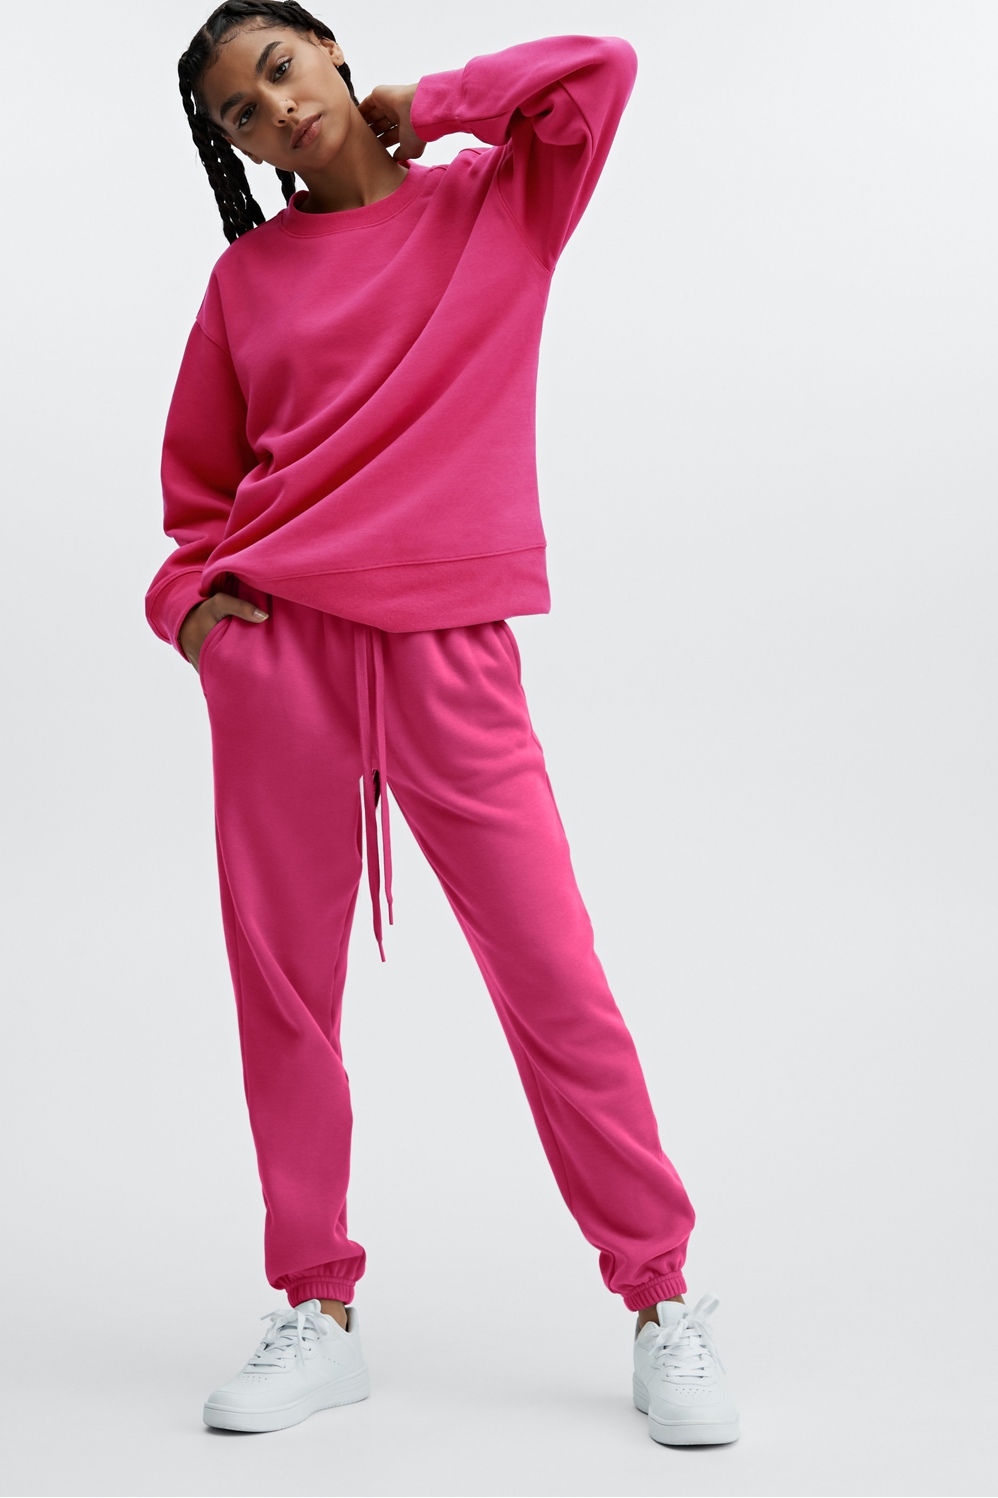 Buy Everyday Fleece Classic Sweatpants - Order Bottoms online 5000007134 -  PINK US